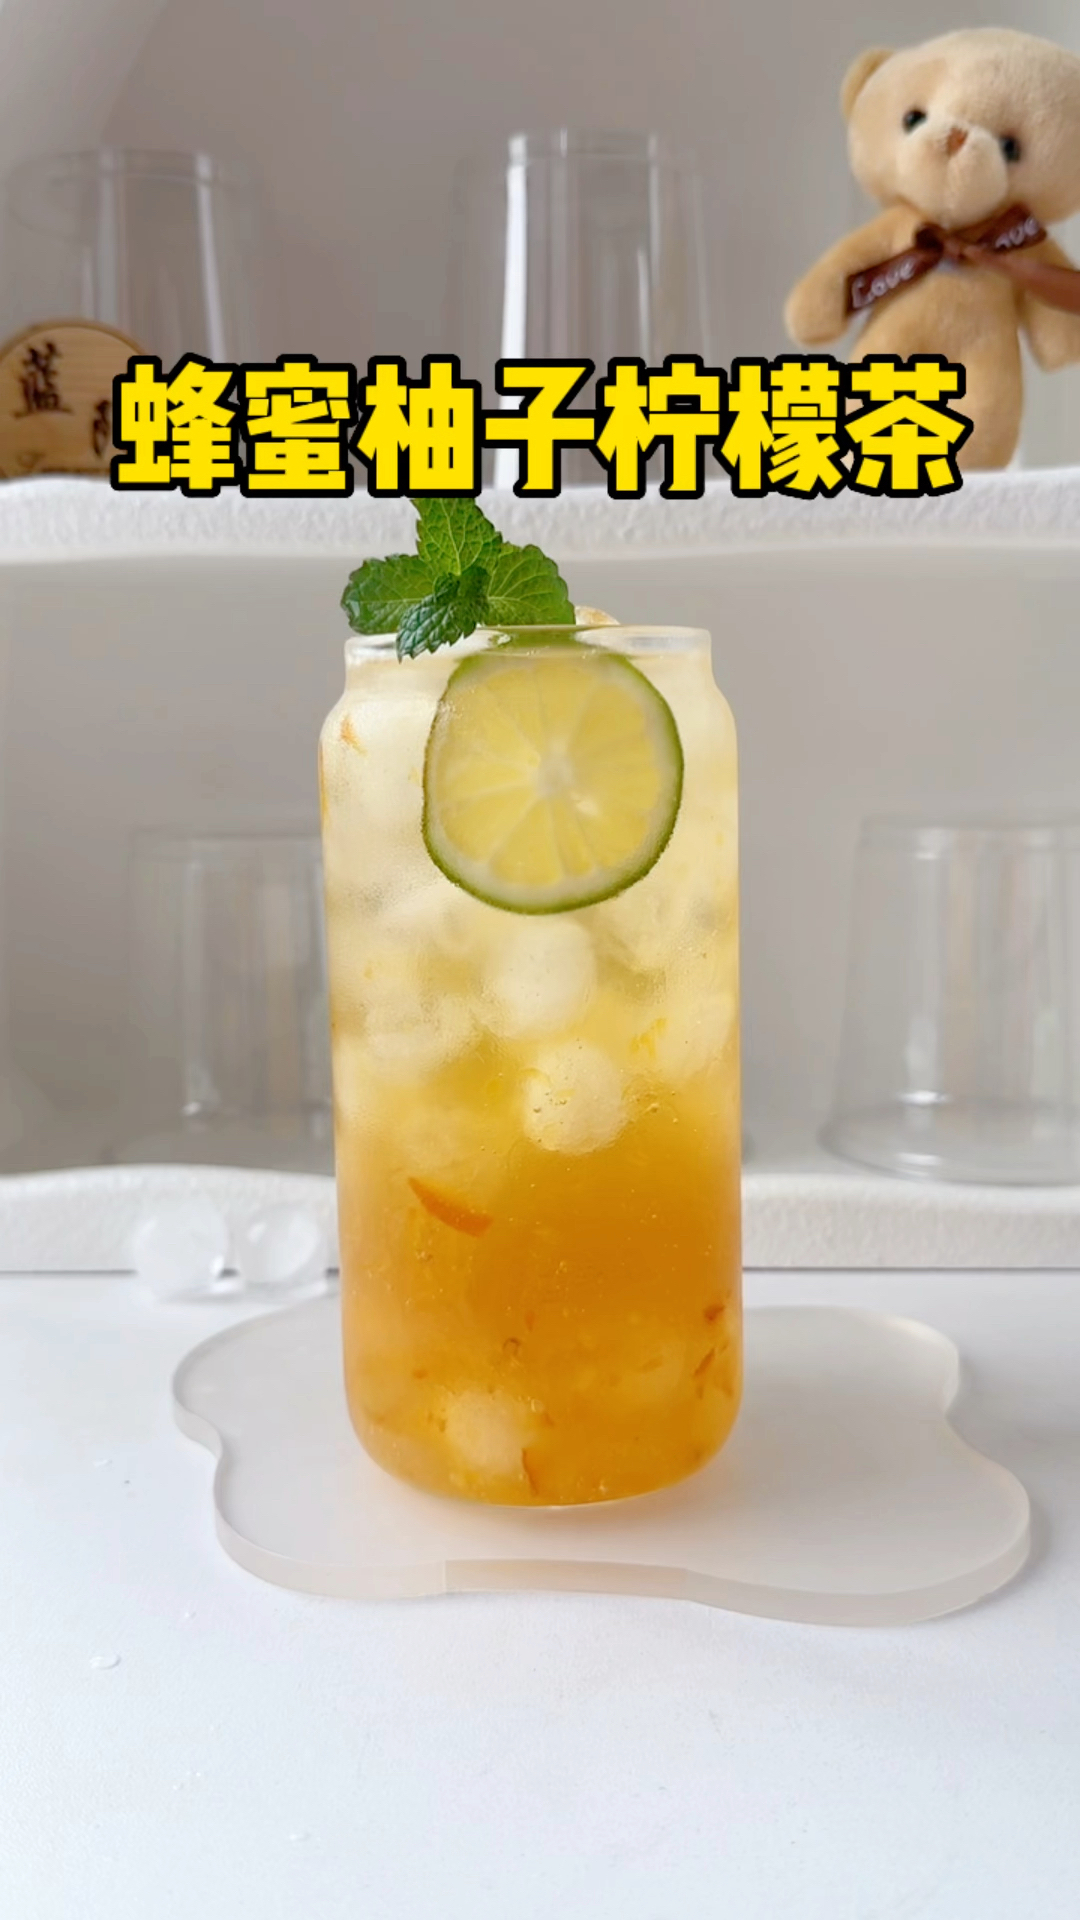 今天来做一杯巨好喝并且简单到有手就会的蜂蜜柚子柠檬茶✌️